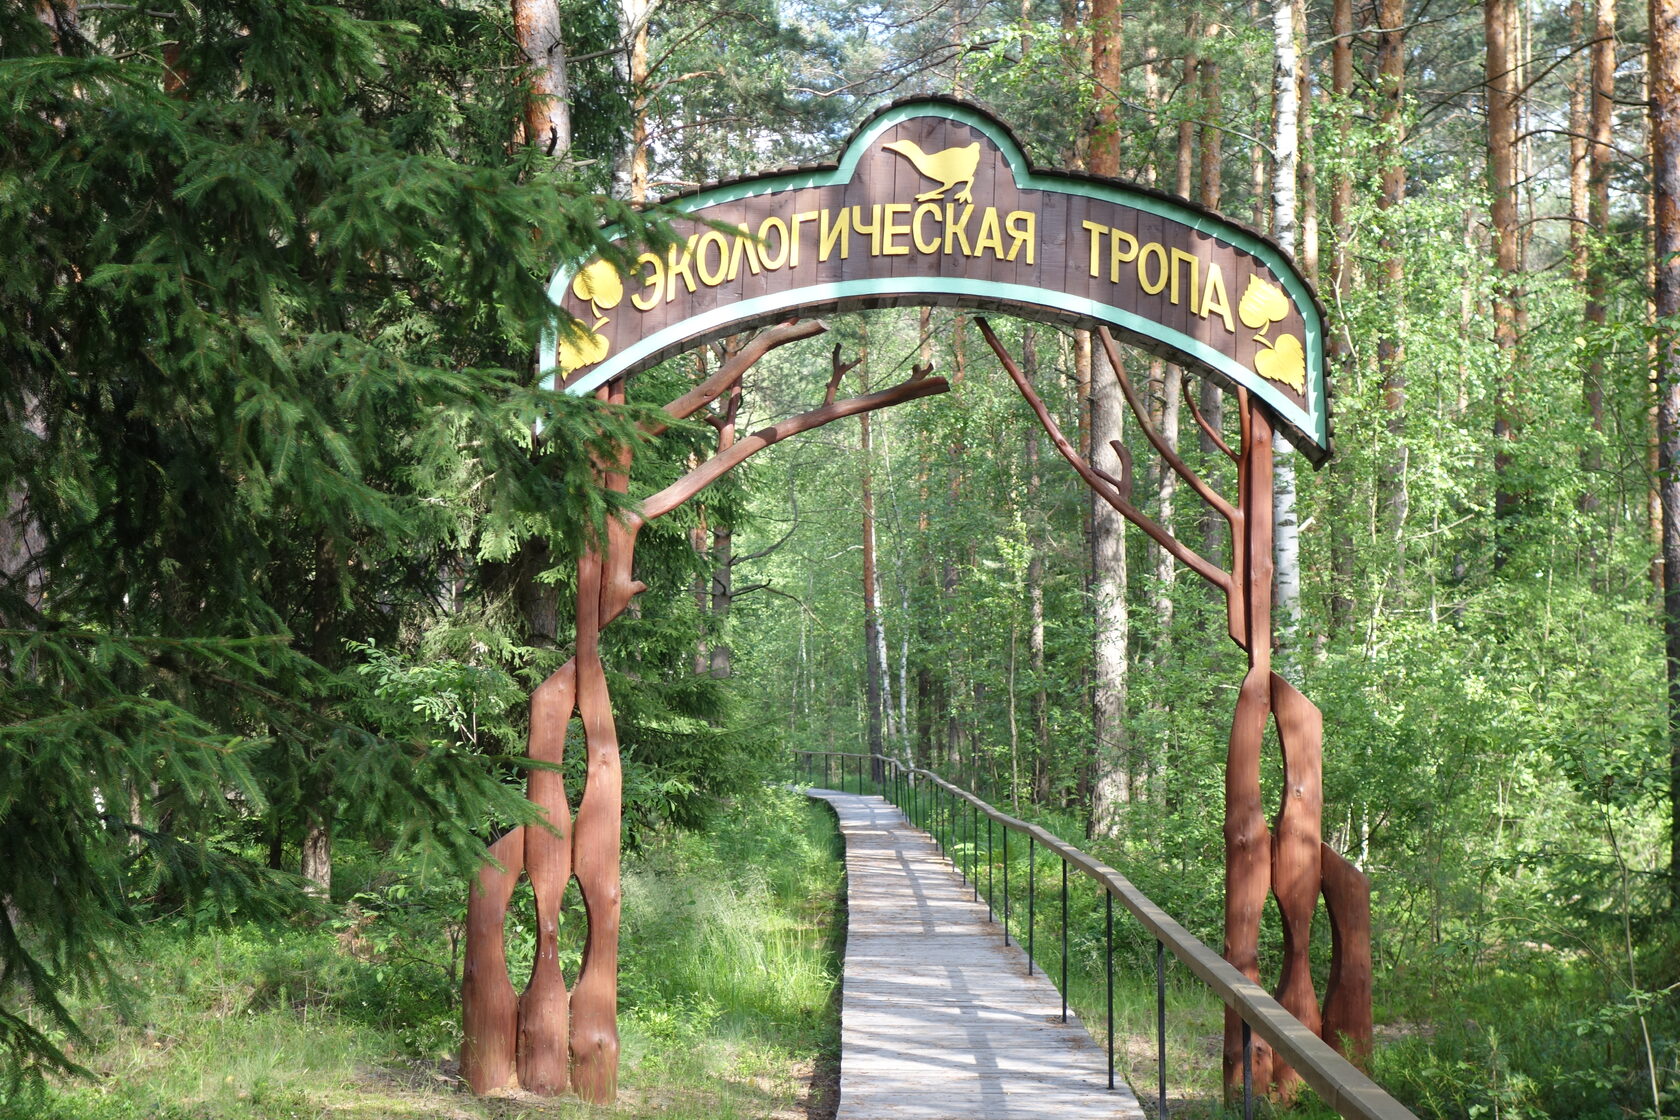 Национальный парк Мещёра во Владимирской